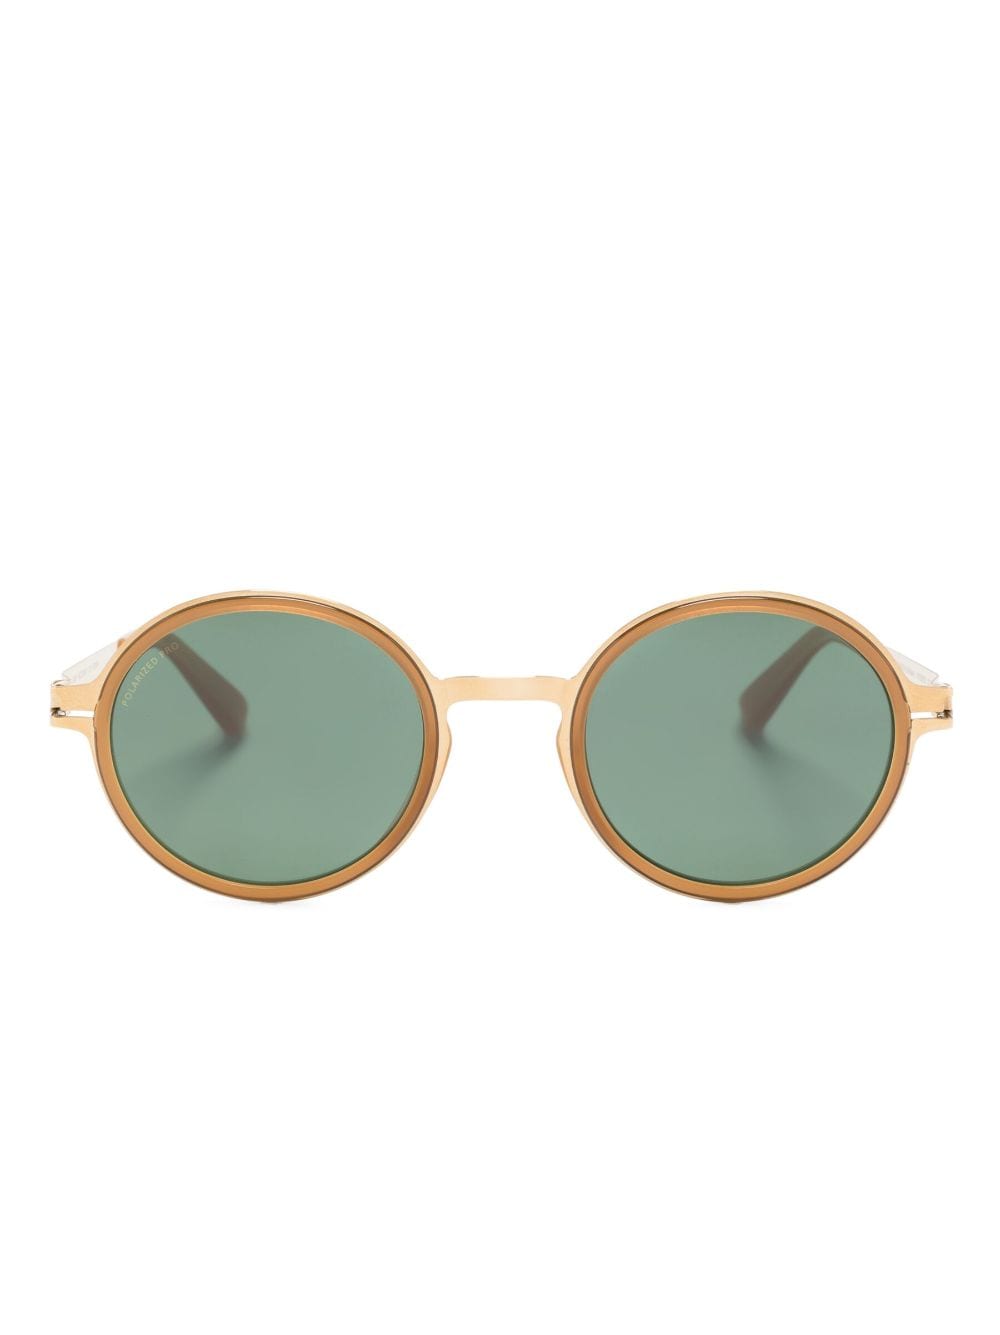 Mykita Dayo round-frame sunglasses - Gold